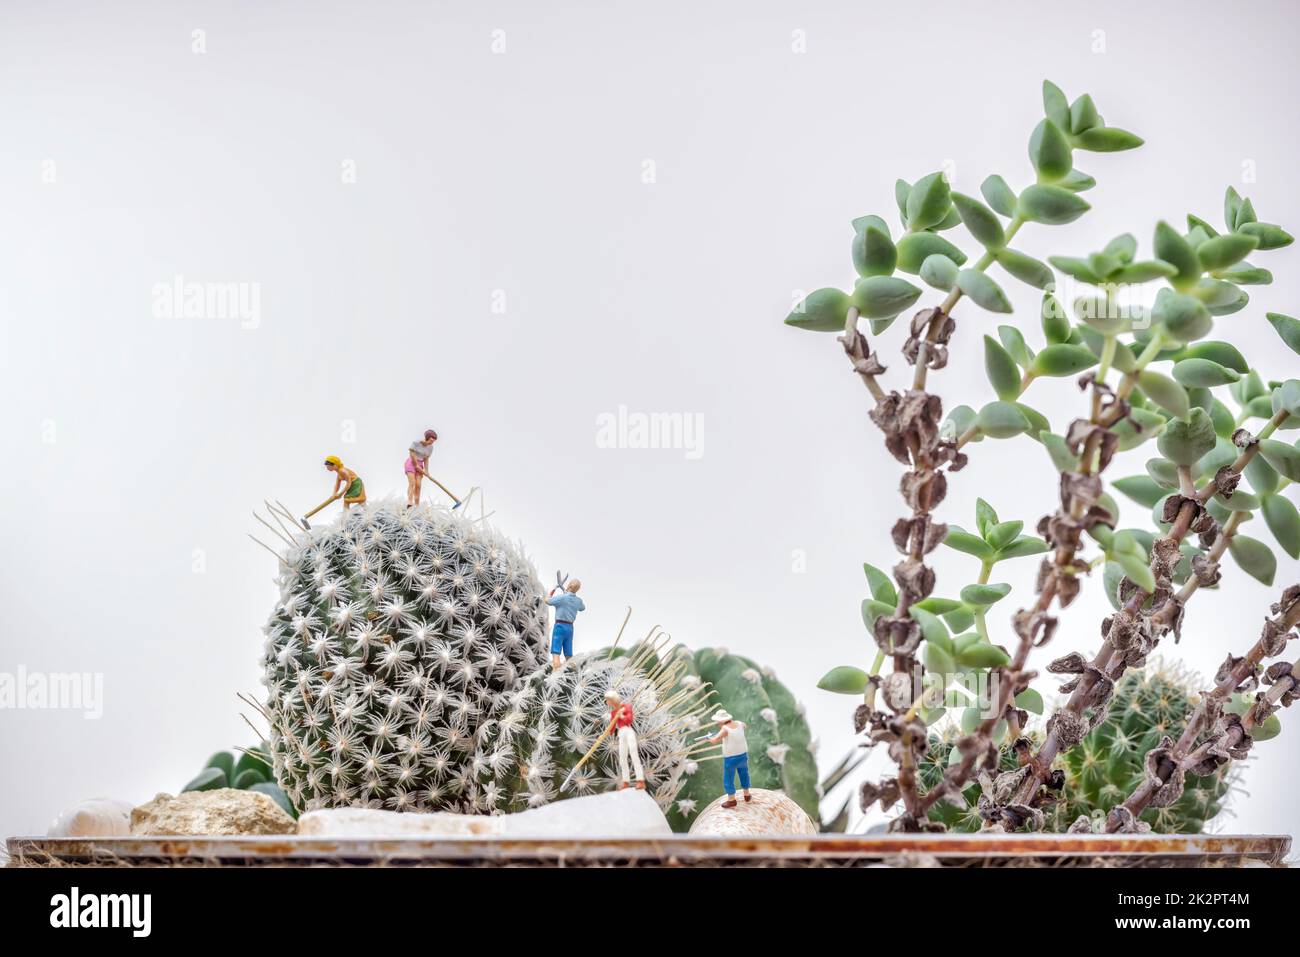 Jardineros en miniatura trabajando en un jardín de cactus Foto de stock